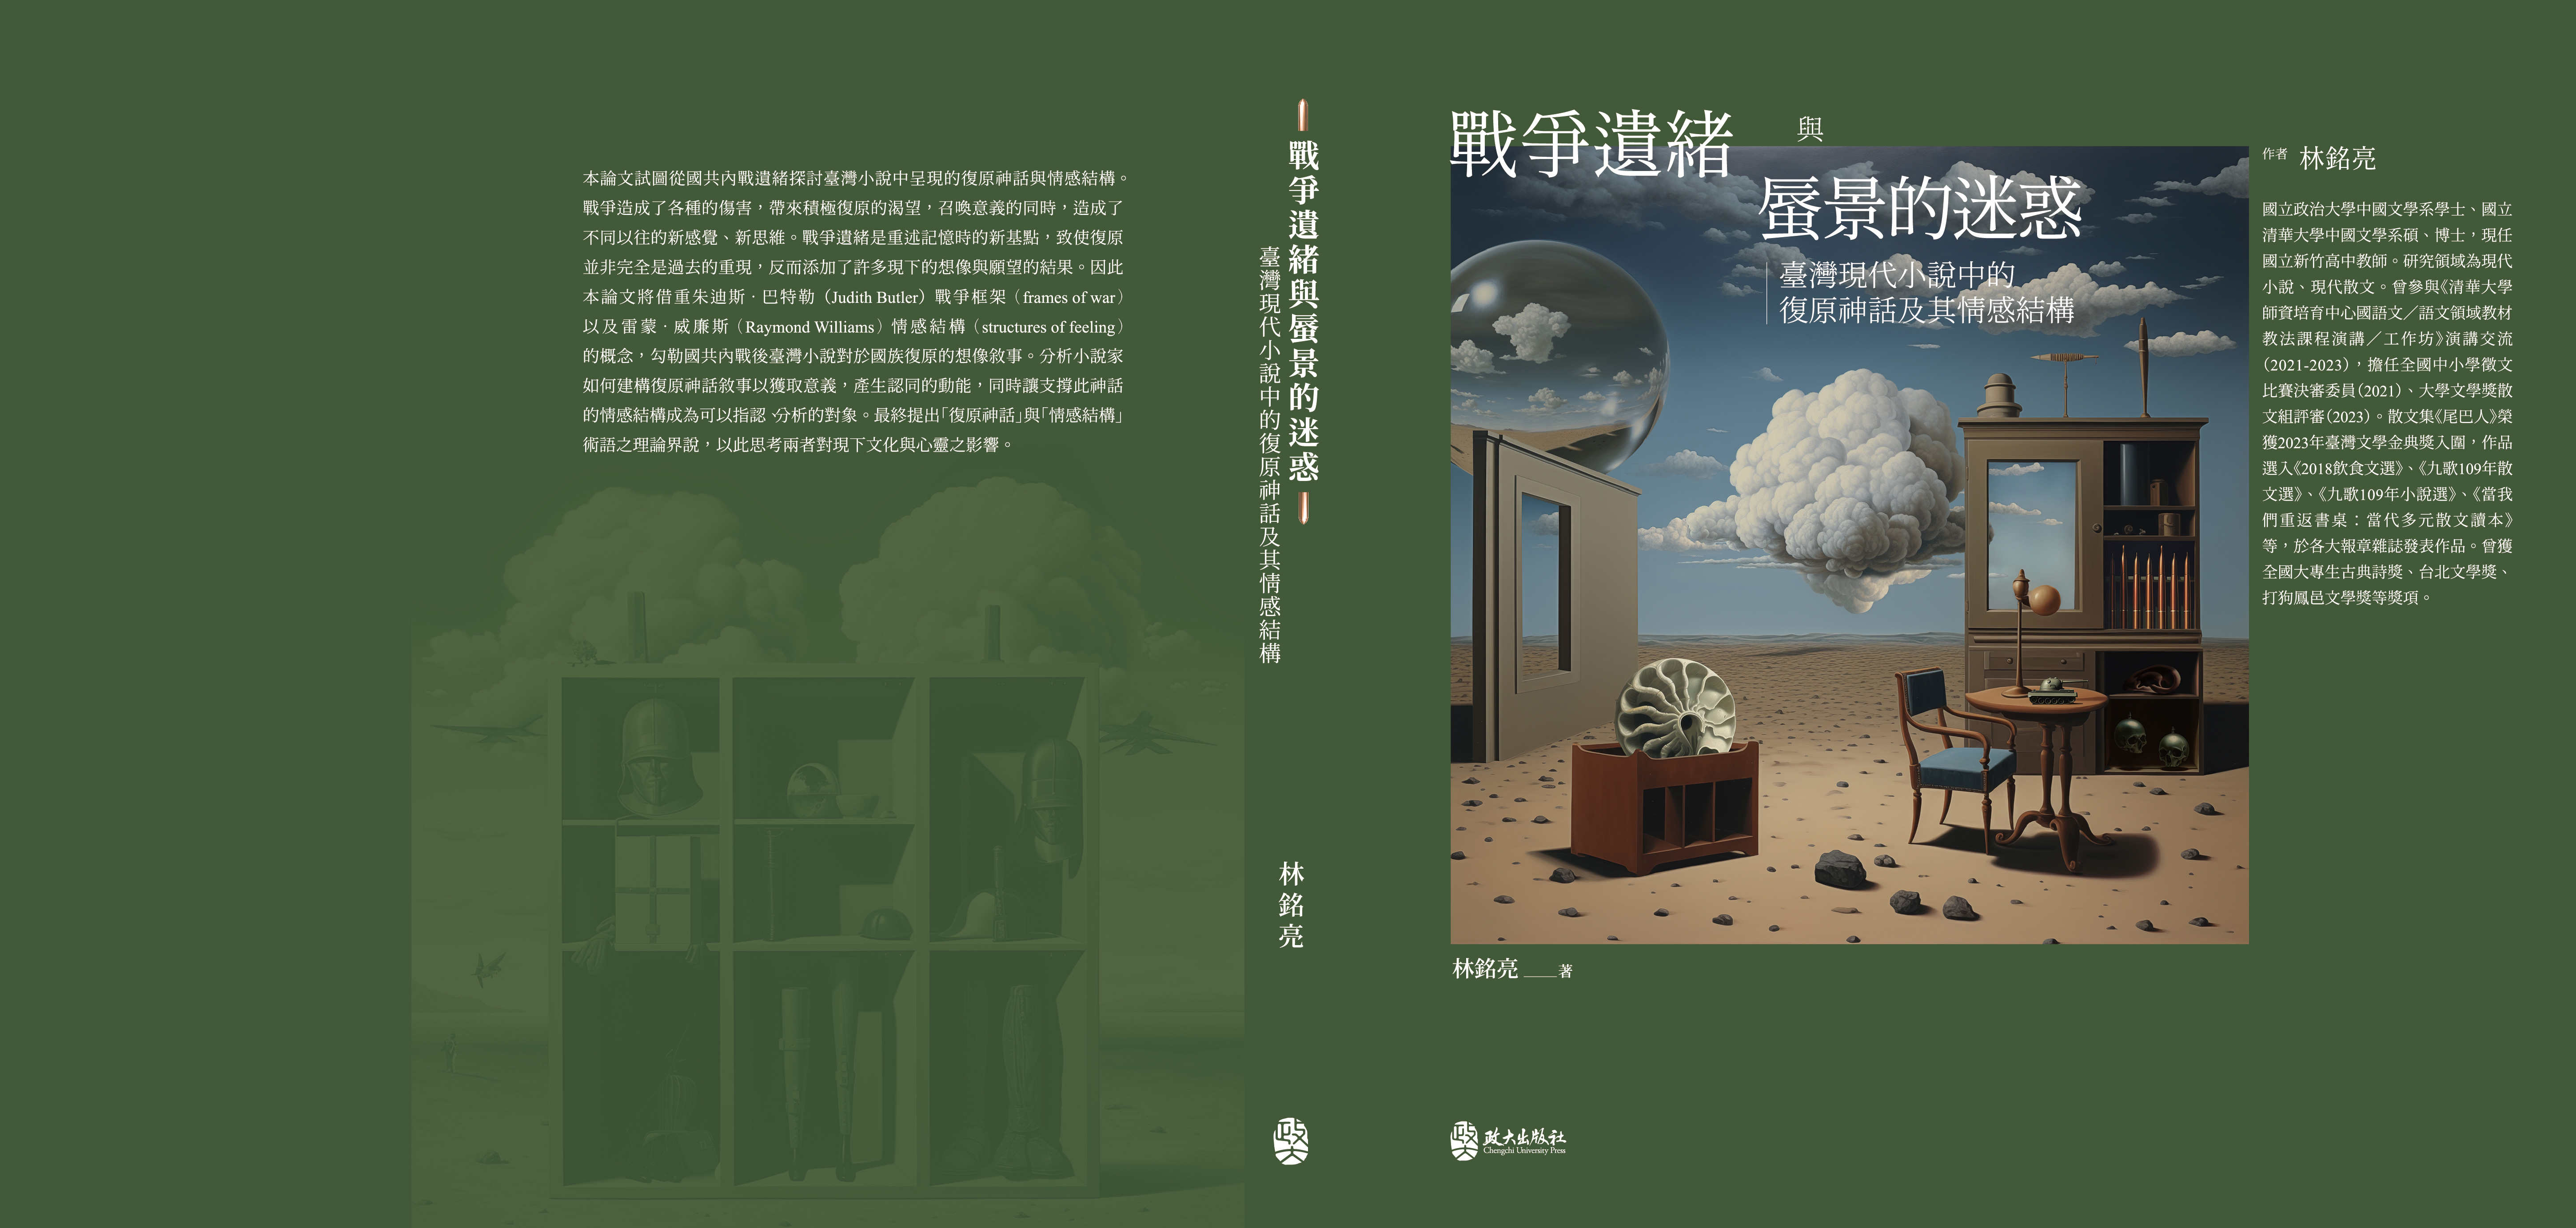 戰爭遺緒與蜃景的迷惑：臺灣現代小說中的復原神話及其情感結構